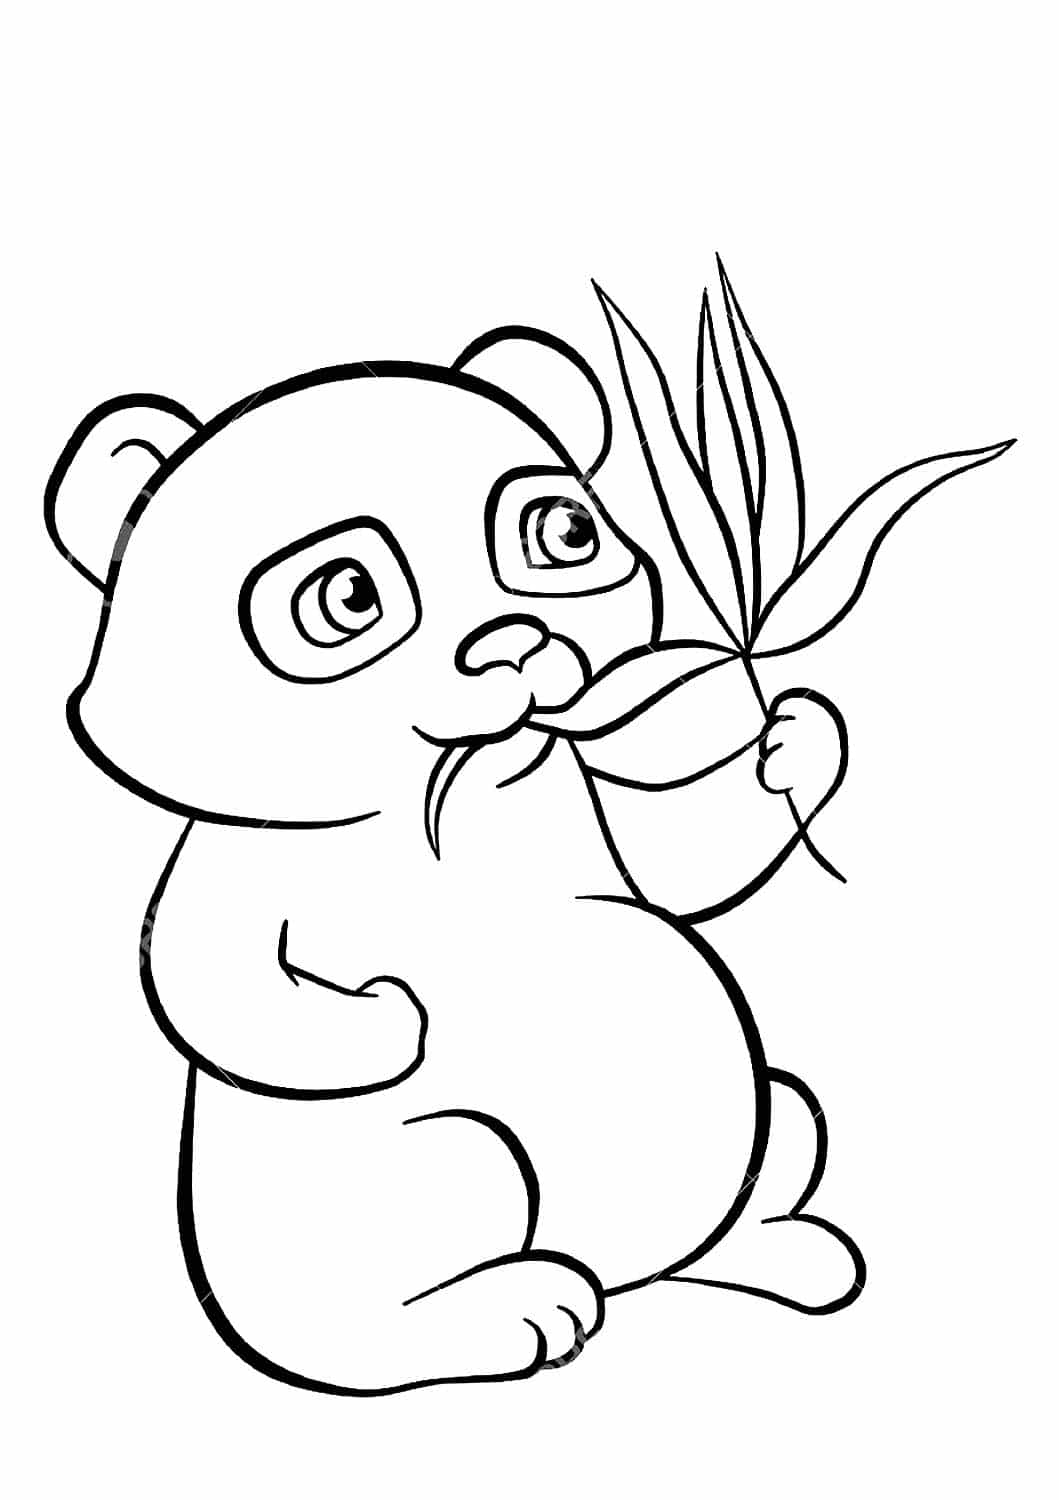 דף צביעה עם ציור של פנדה קטן אוכל במבוק